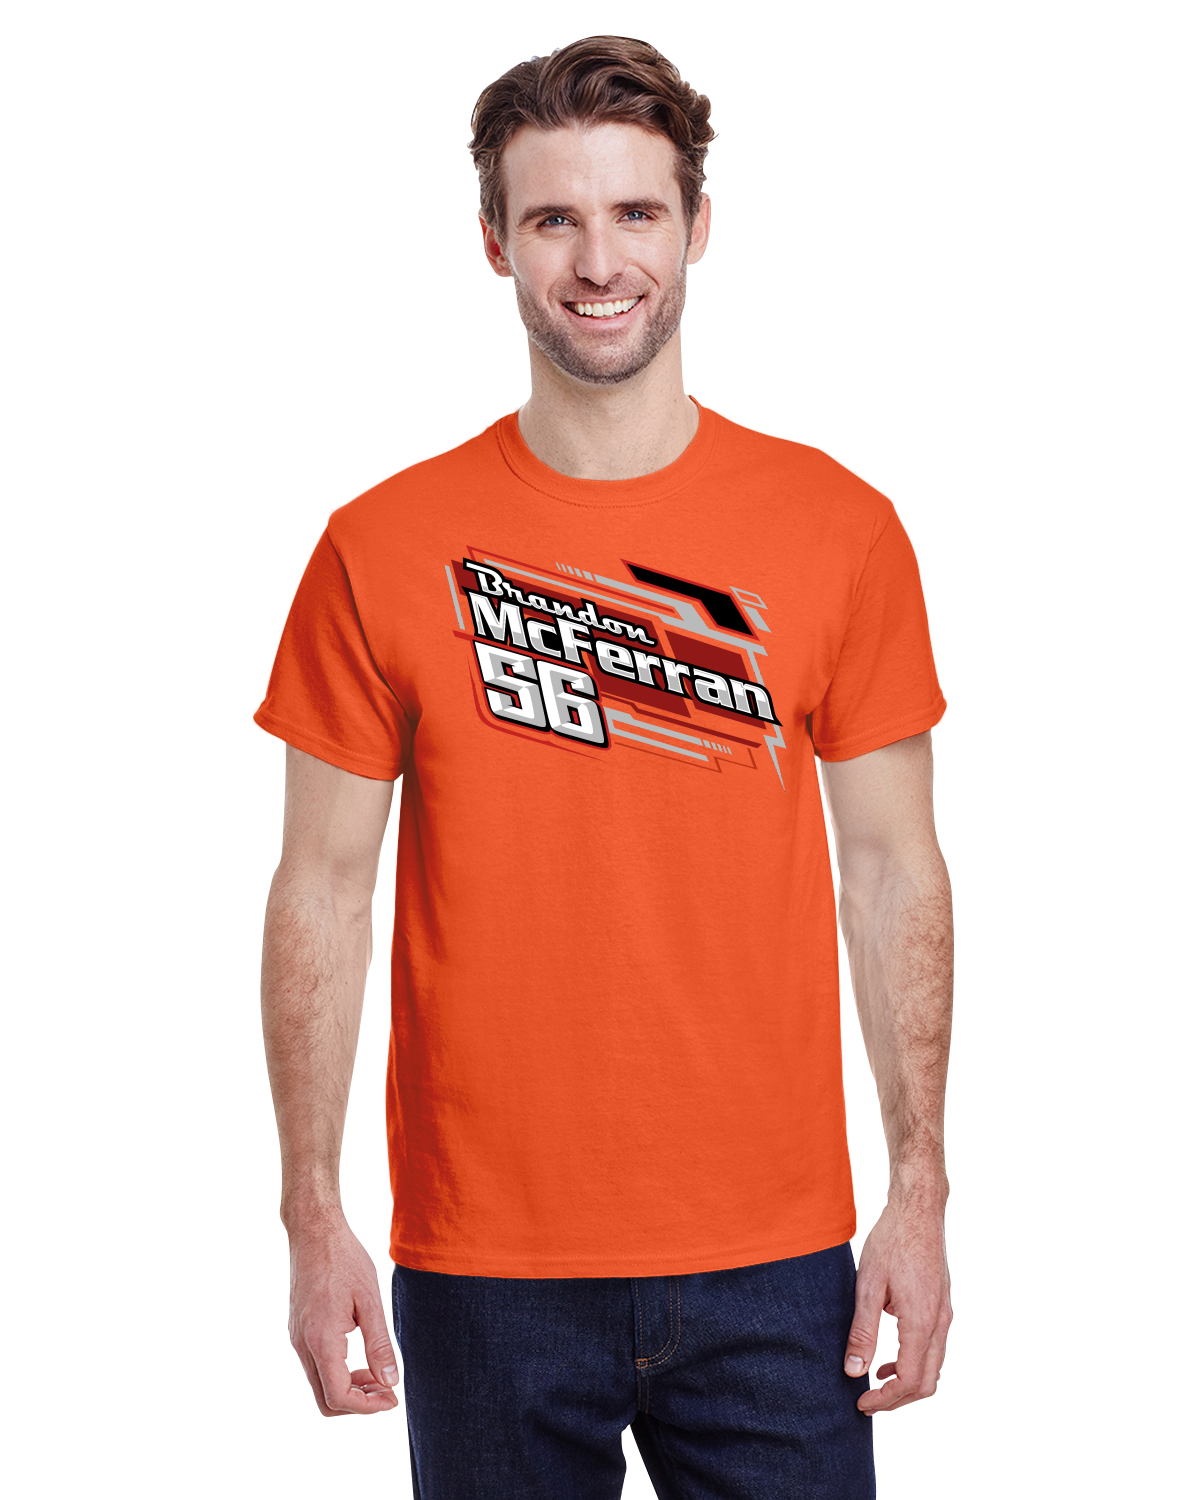 Brandon McFerran Racing Men's tshirt